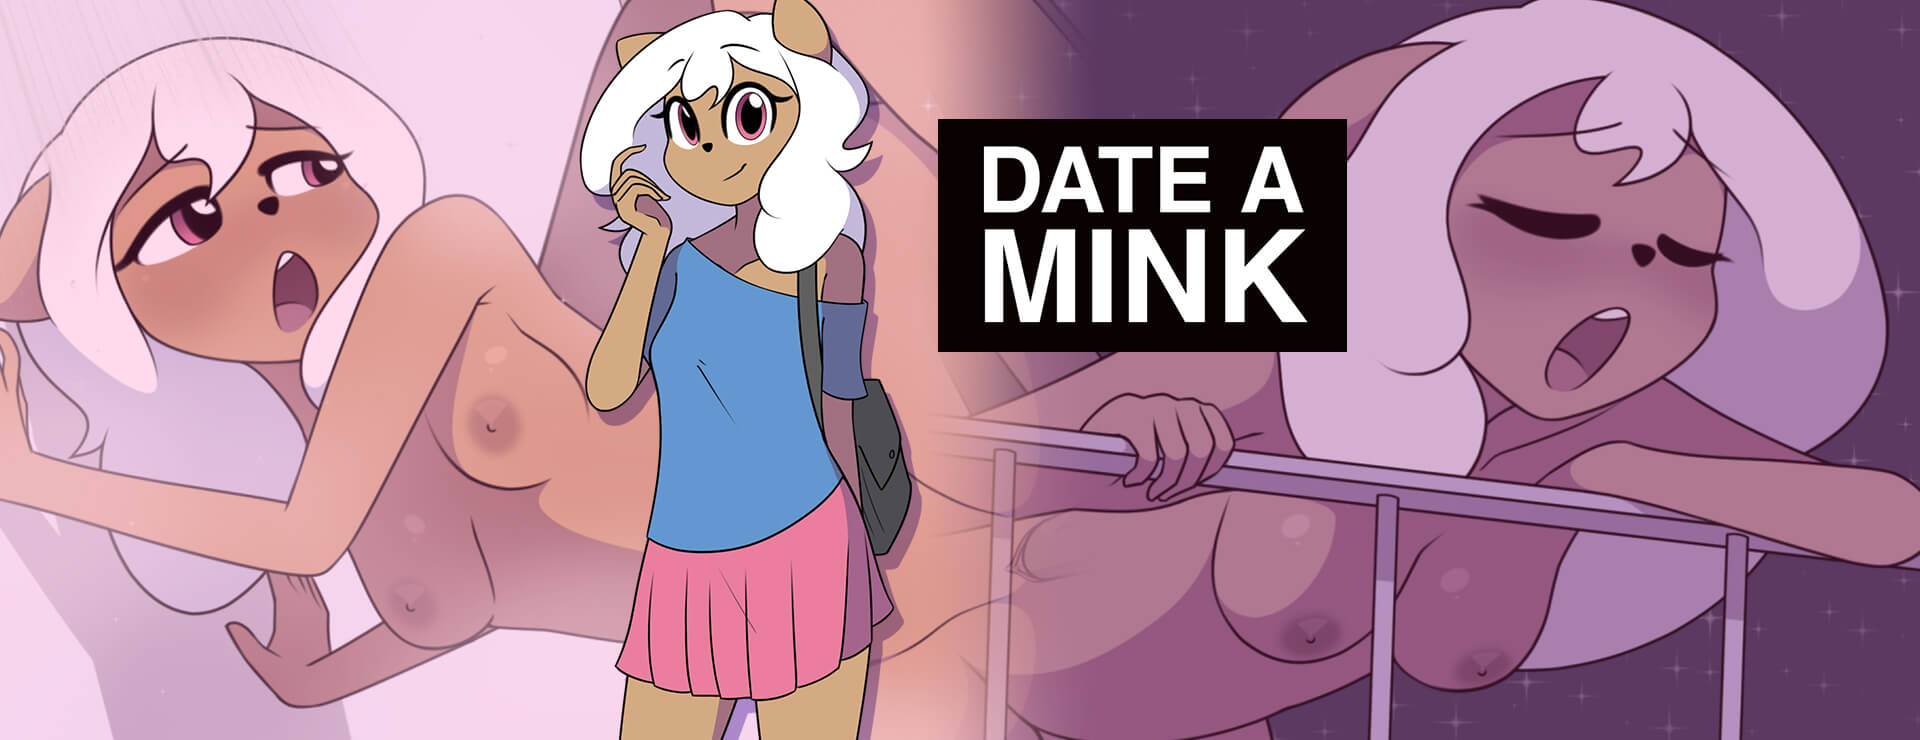 Date a Mink - Powieść wizualna Gra